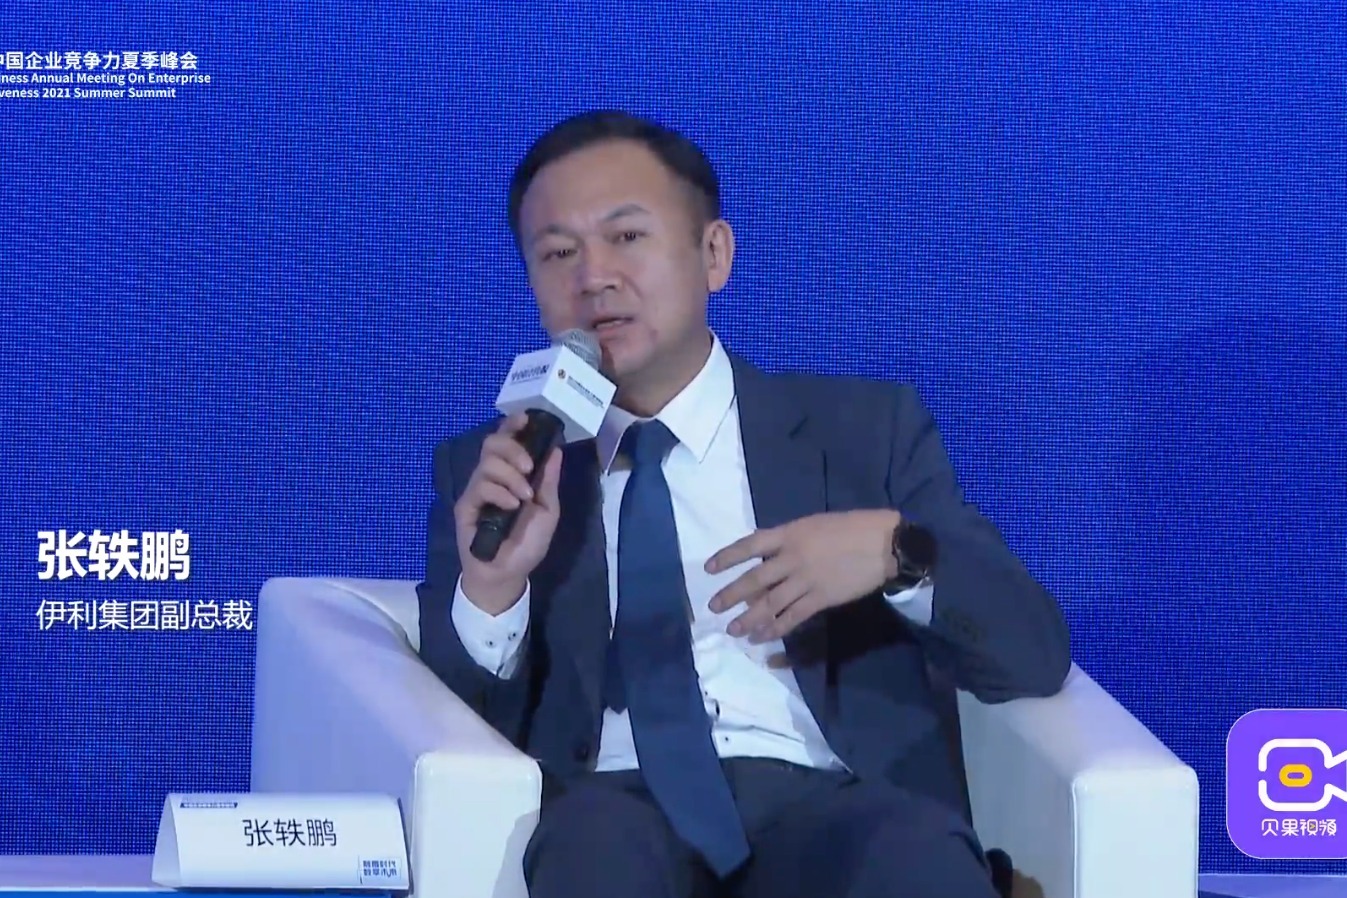 伊利集团副总裁张轶鹏:乳业还有很大的空间做数字化的